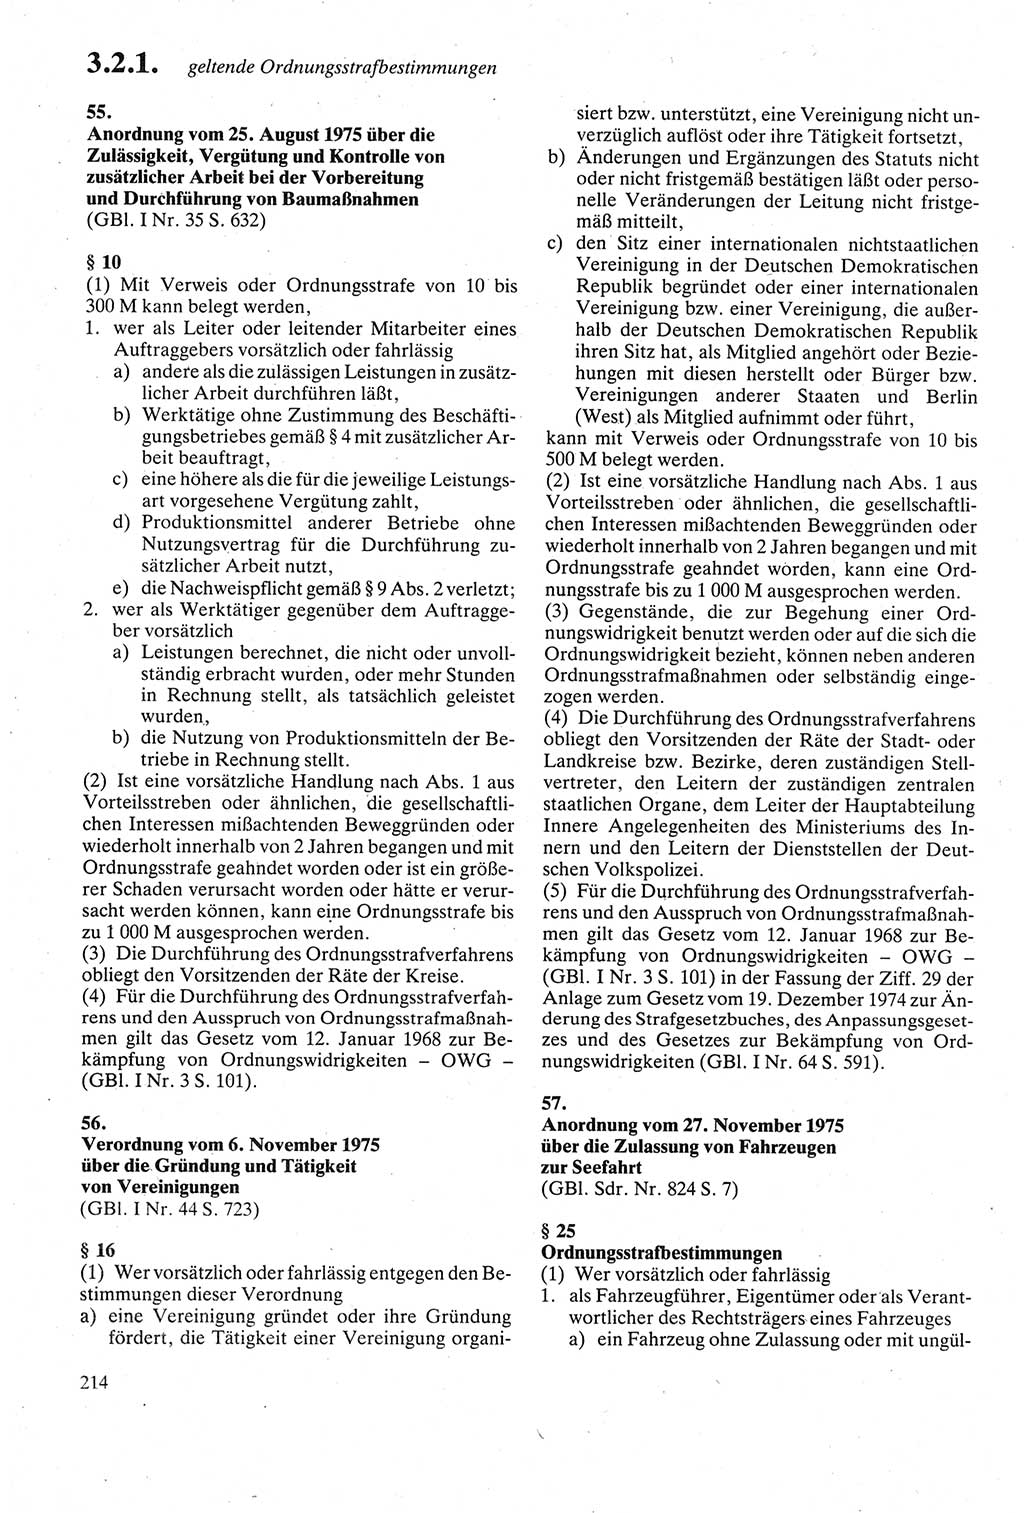 Strafgesetzbuch (StGB) der Deutschen Demokratischen Republik (DDR) sowie angrenzende Gesetze und Bestimmungen 1979, Seite 214 (StGB DDR Ges. Best. 1979, S. 214)